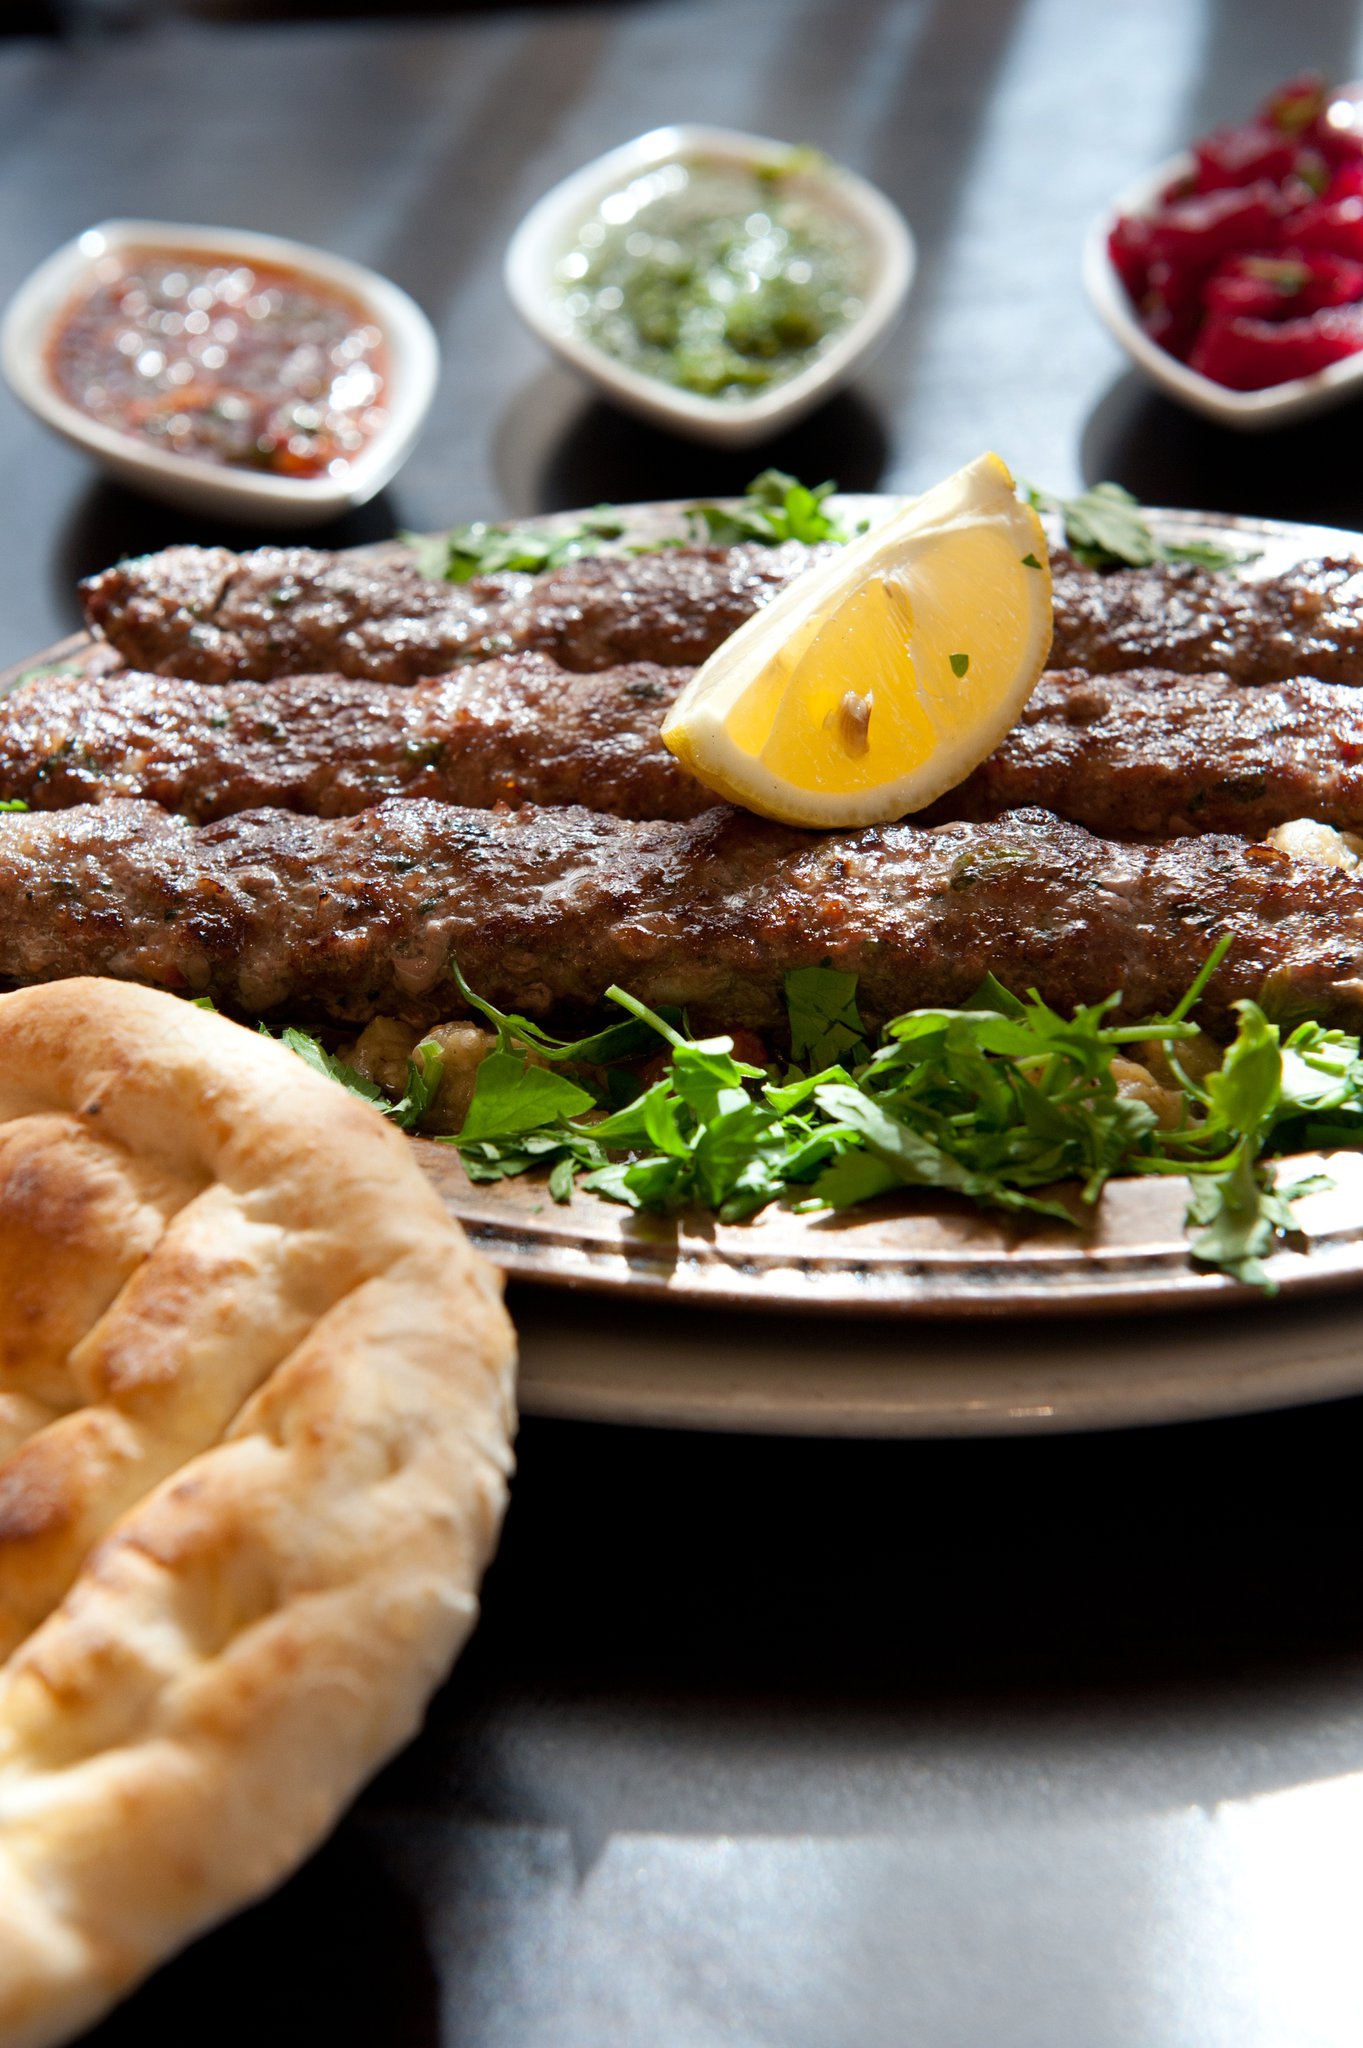 Turk Lahmajoun - Turkish street food in a Pita or Lafa